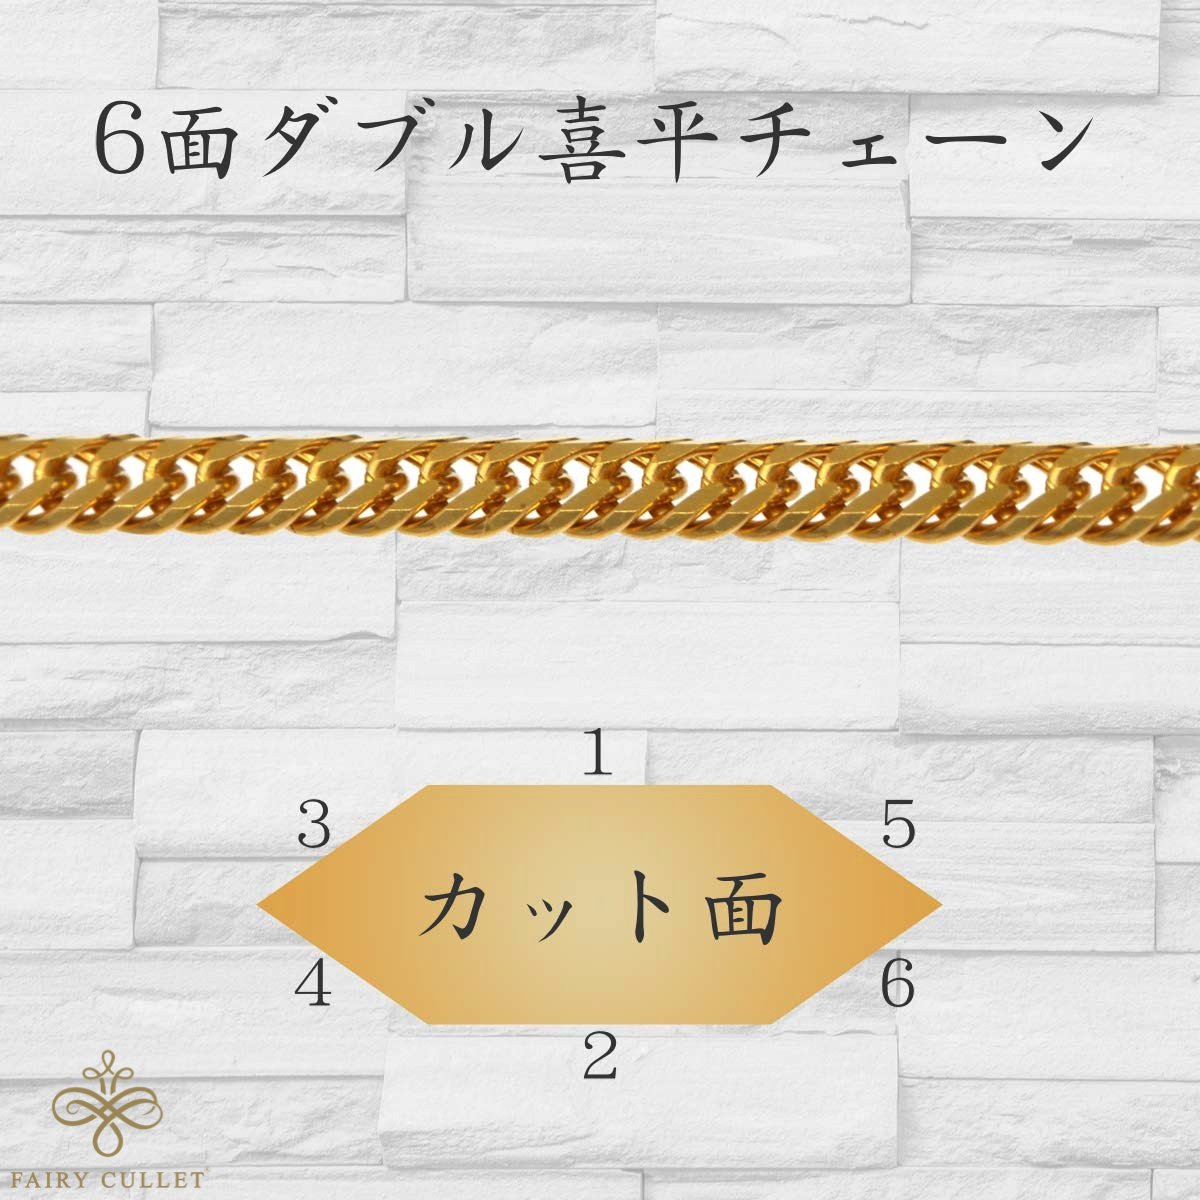 24金ネックレス K24 6面W喜平チェーン 日本製 純金 検定印 15g 50cm ...